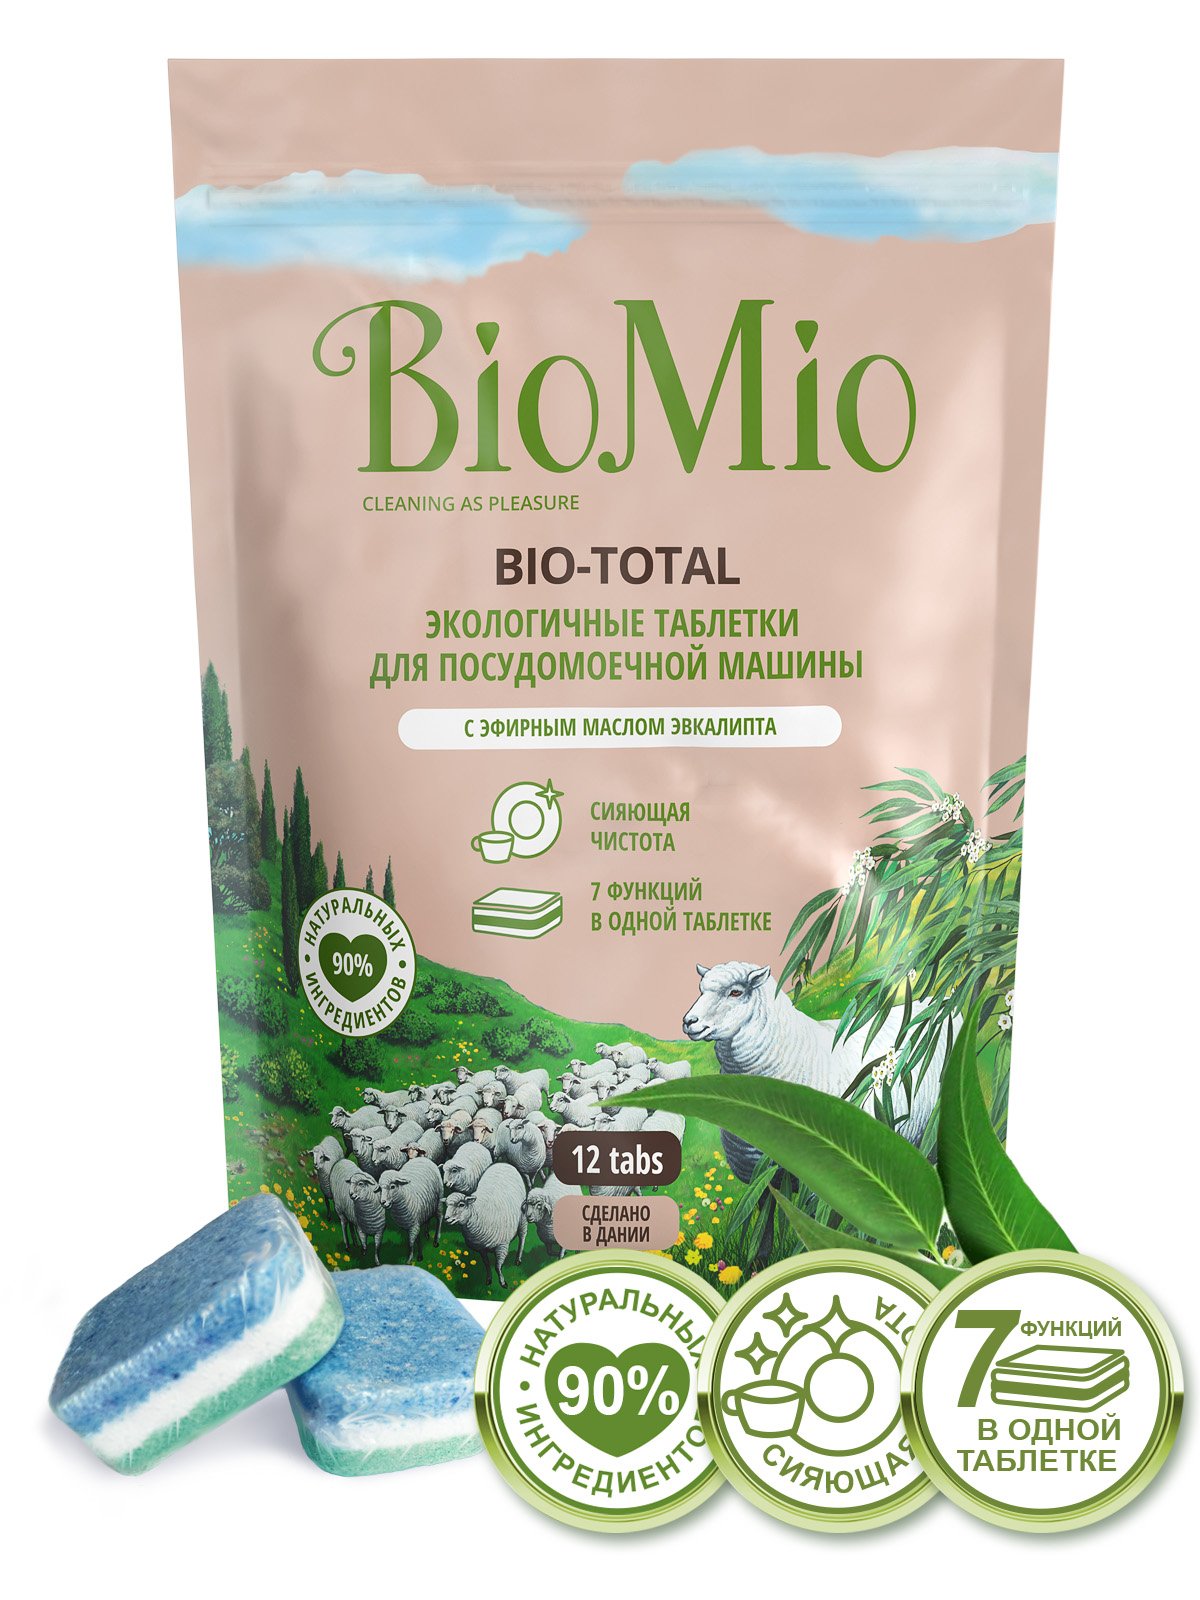 Таблетки для миття посуду в посудомийних машинах BioMio Bio-Total 7 в 1, з маслом евкаліпта, 12 шт. - фото 2